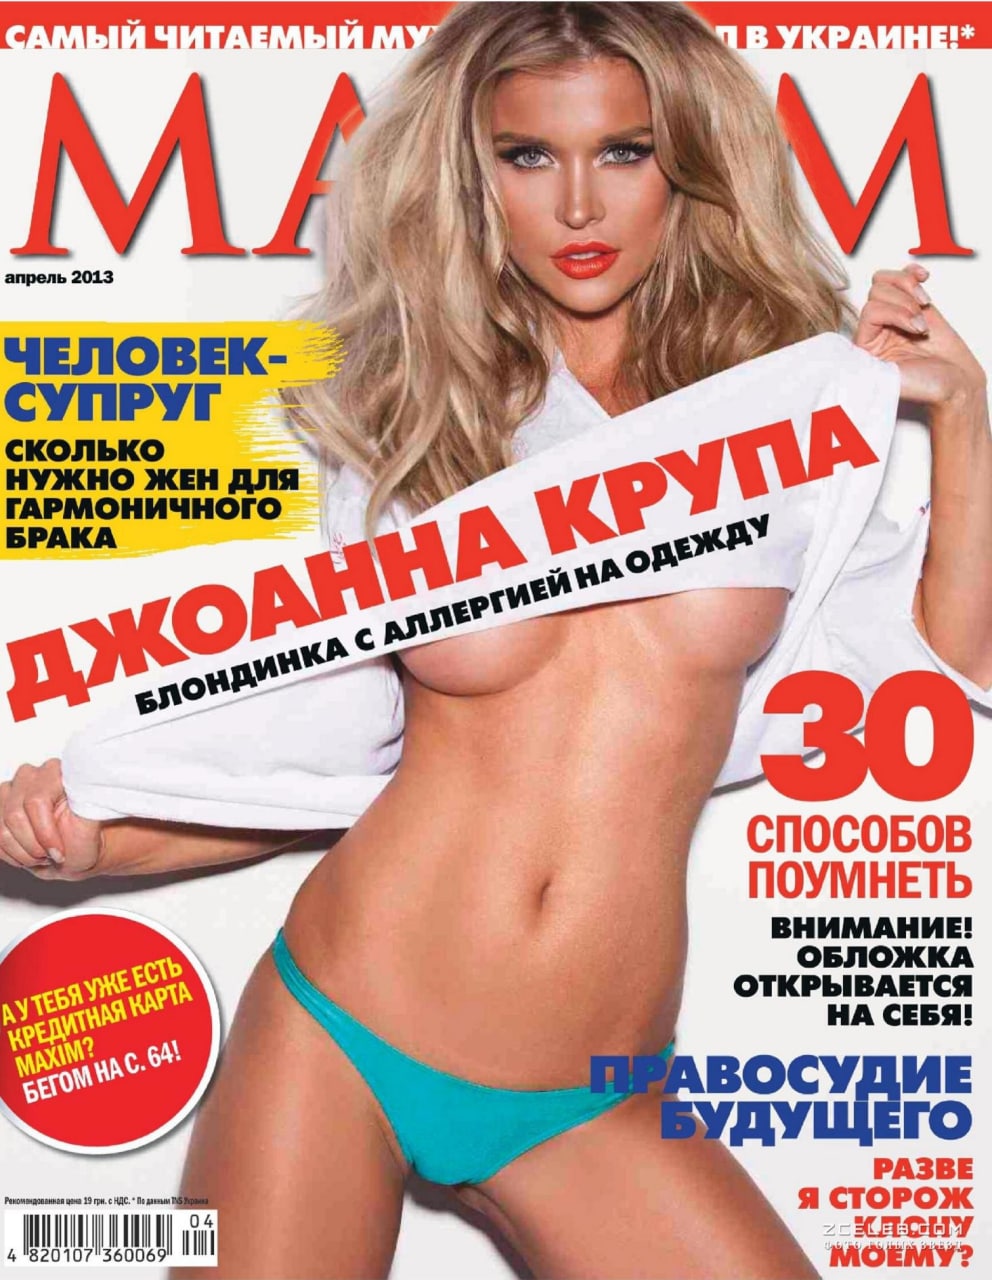 Максим Журнал Для Мужчин Фото Девушек